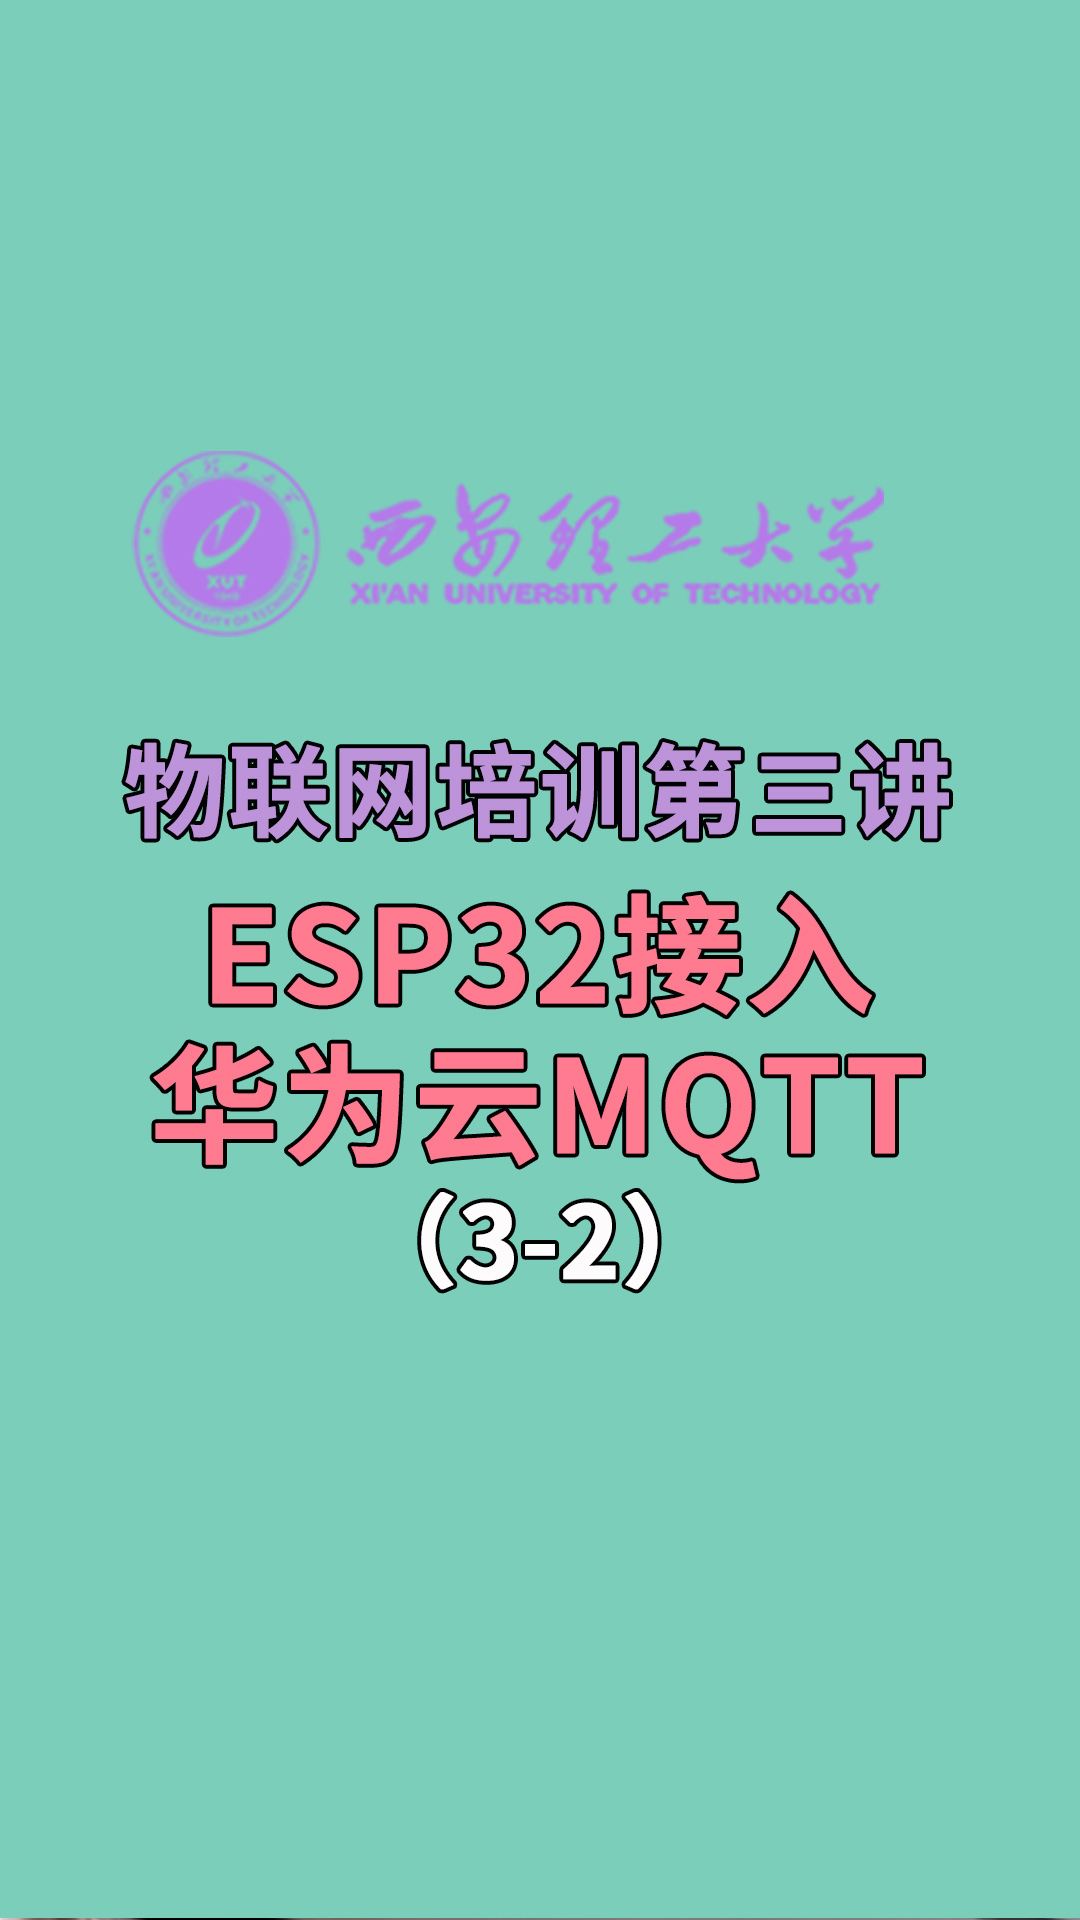 西安理工大学-物联网培训第三讲-ESP32接入华为云MQTT3-2#华为 